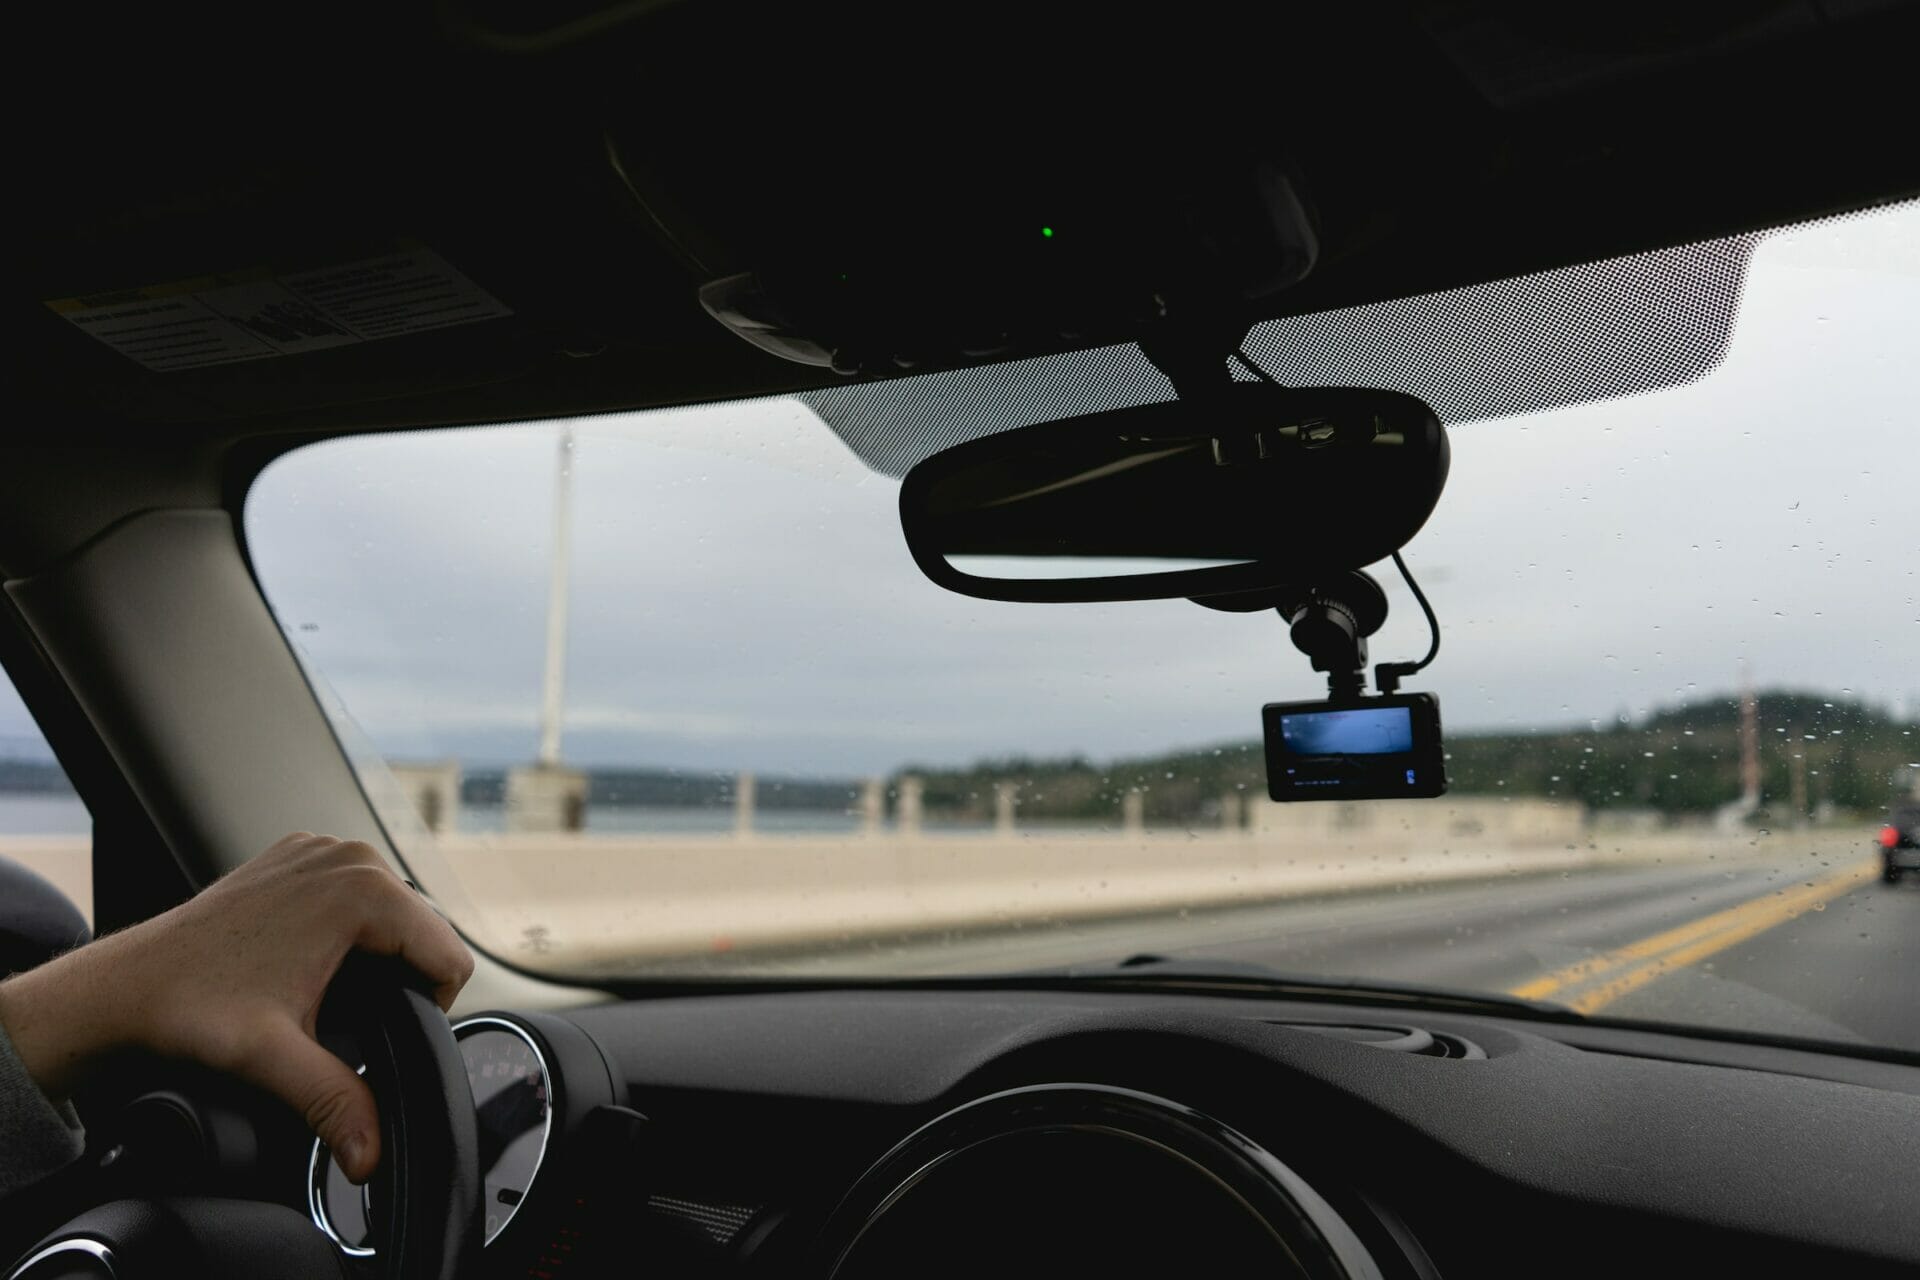 لا تقع في هذا الخطأ: غرامة كبيرة وحظر قيادة بسبب الاستخدام الخاطئ للكاميرا الأمامية Dashcam في السيارة